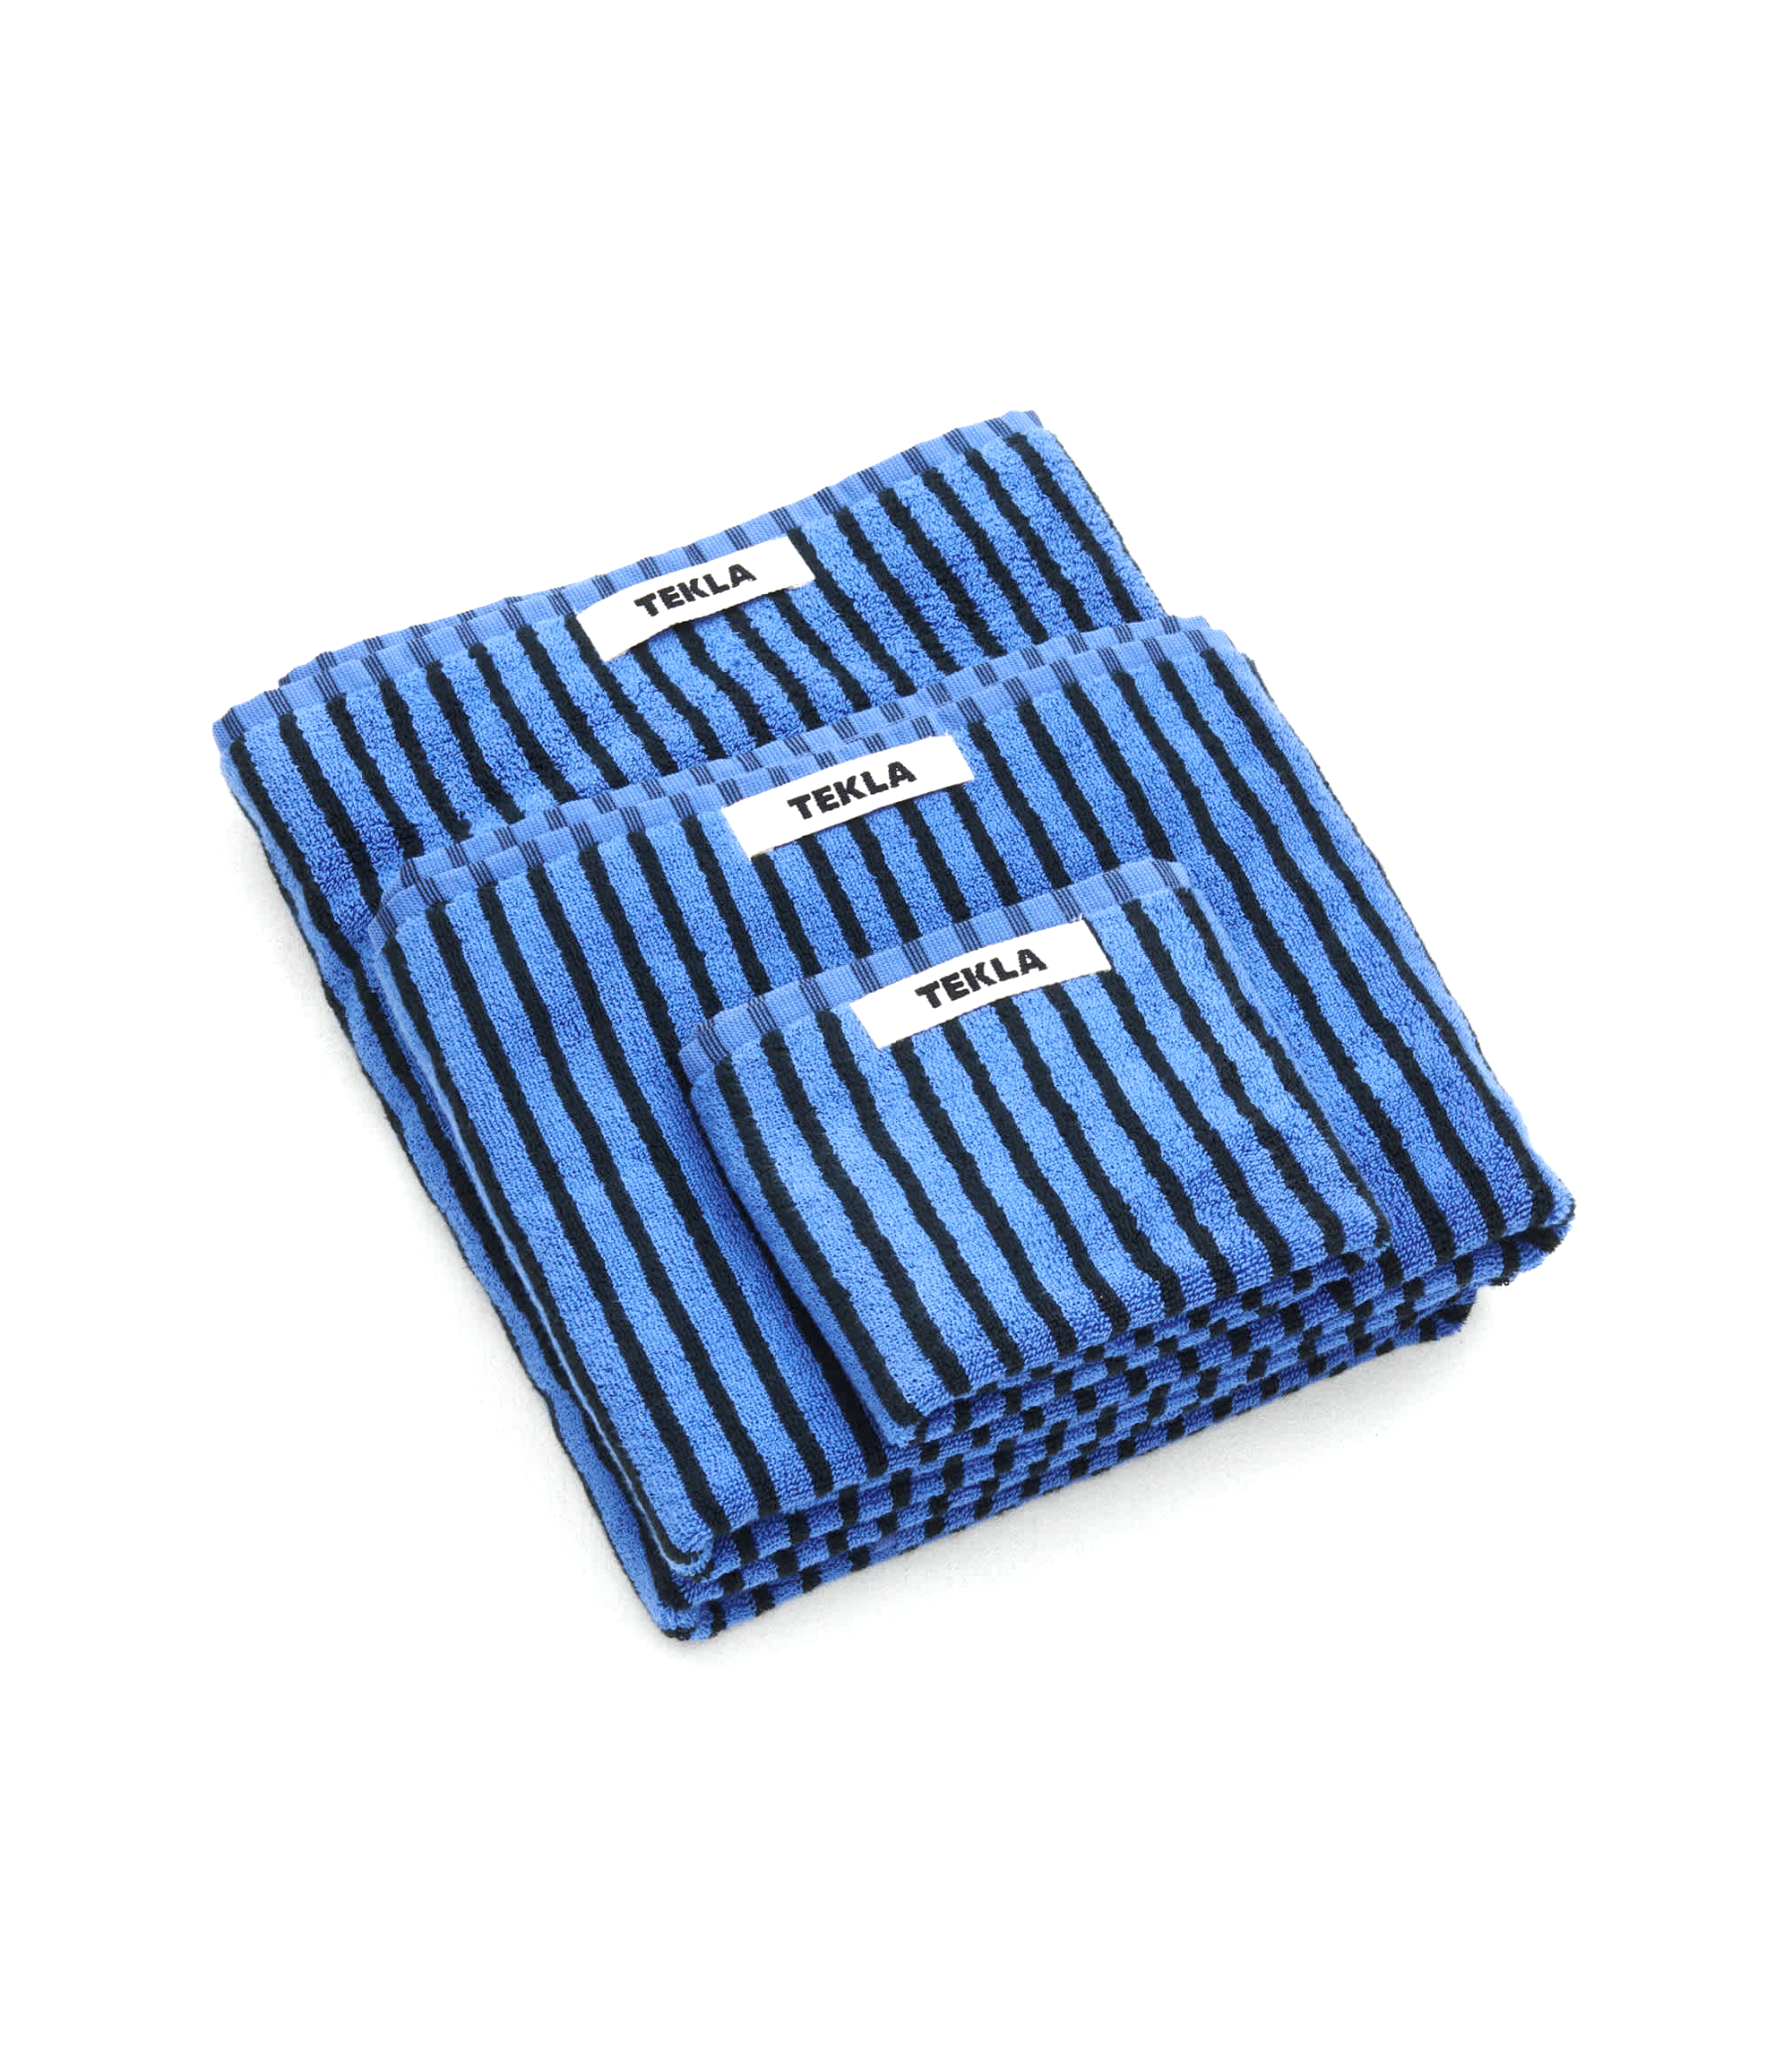 Washcloth (Striped) - Blue / Black